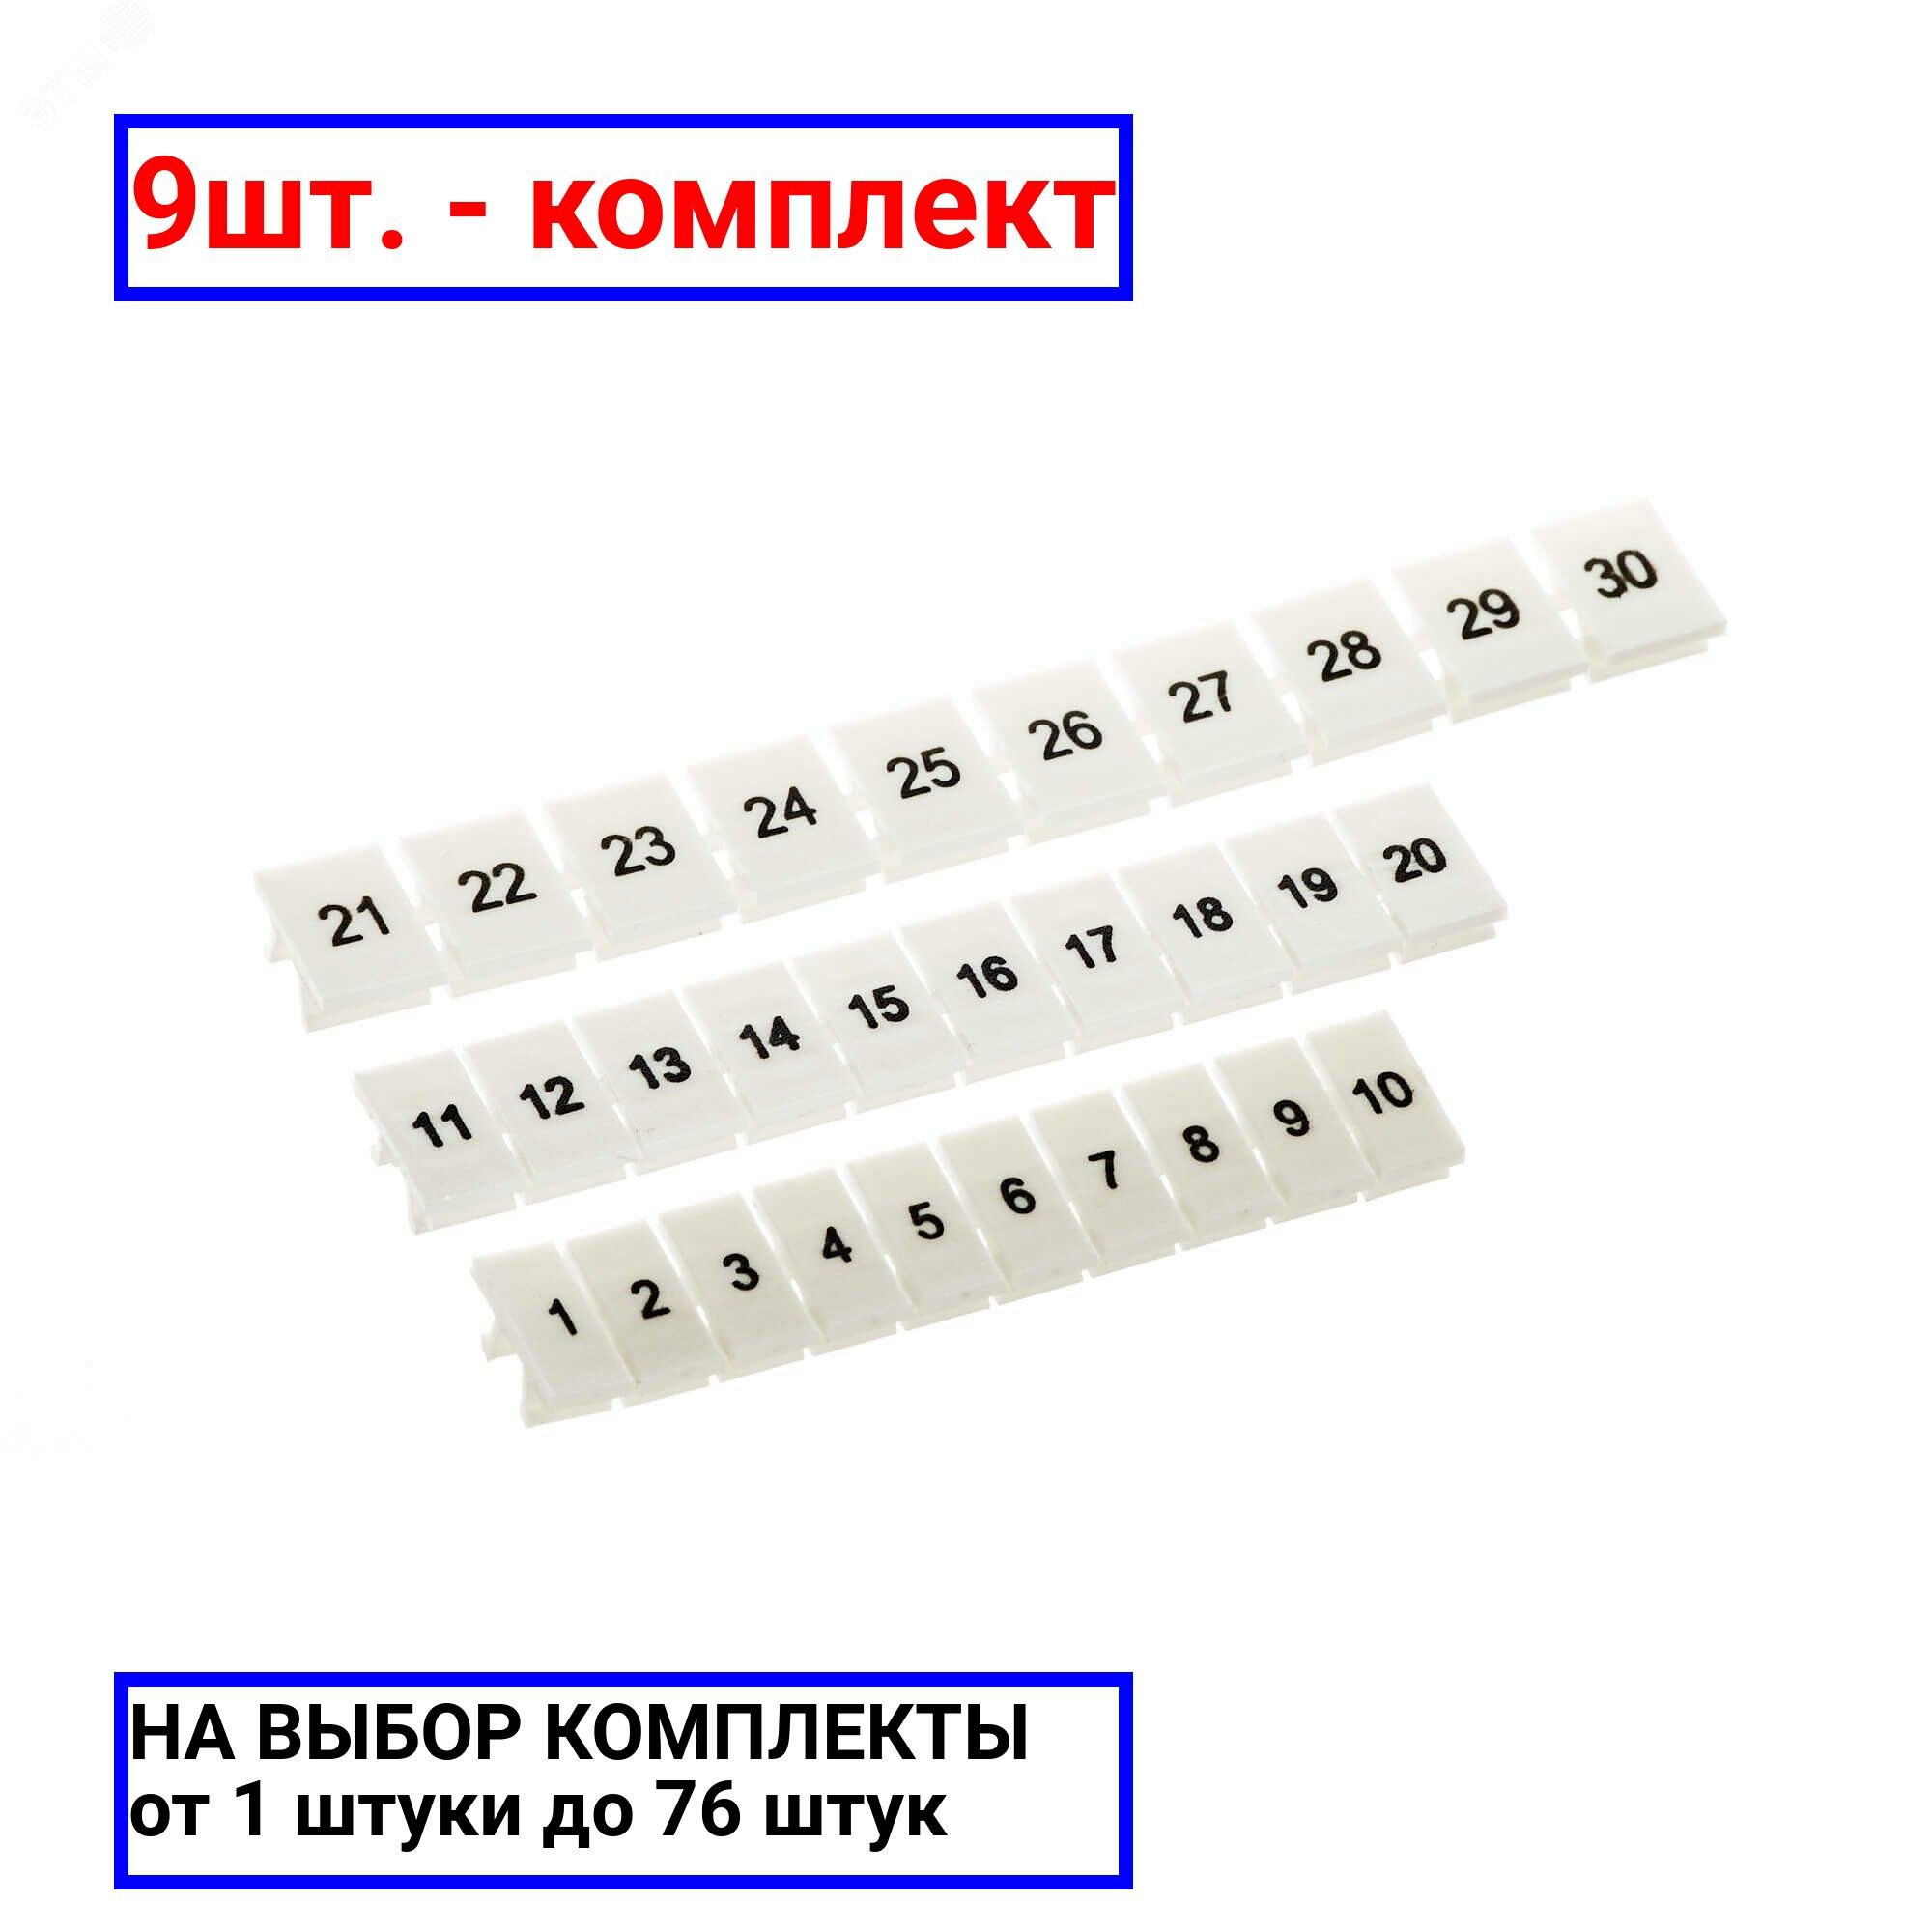 9шт. - Маркировка для клемм ширина 8 мм от 1 до 10 вертикальная ориентация / DKC; арт. NUPUTUK-8-1-10V; оригинал / - комплект 9шт